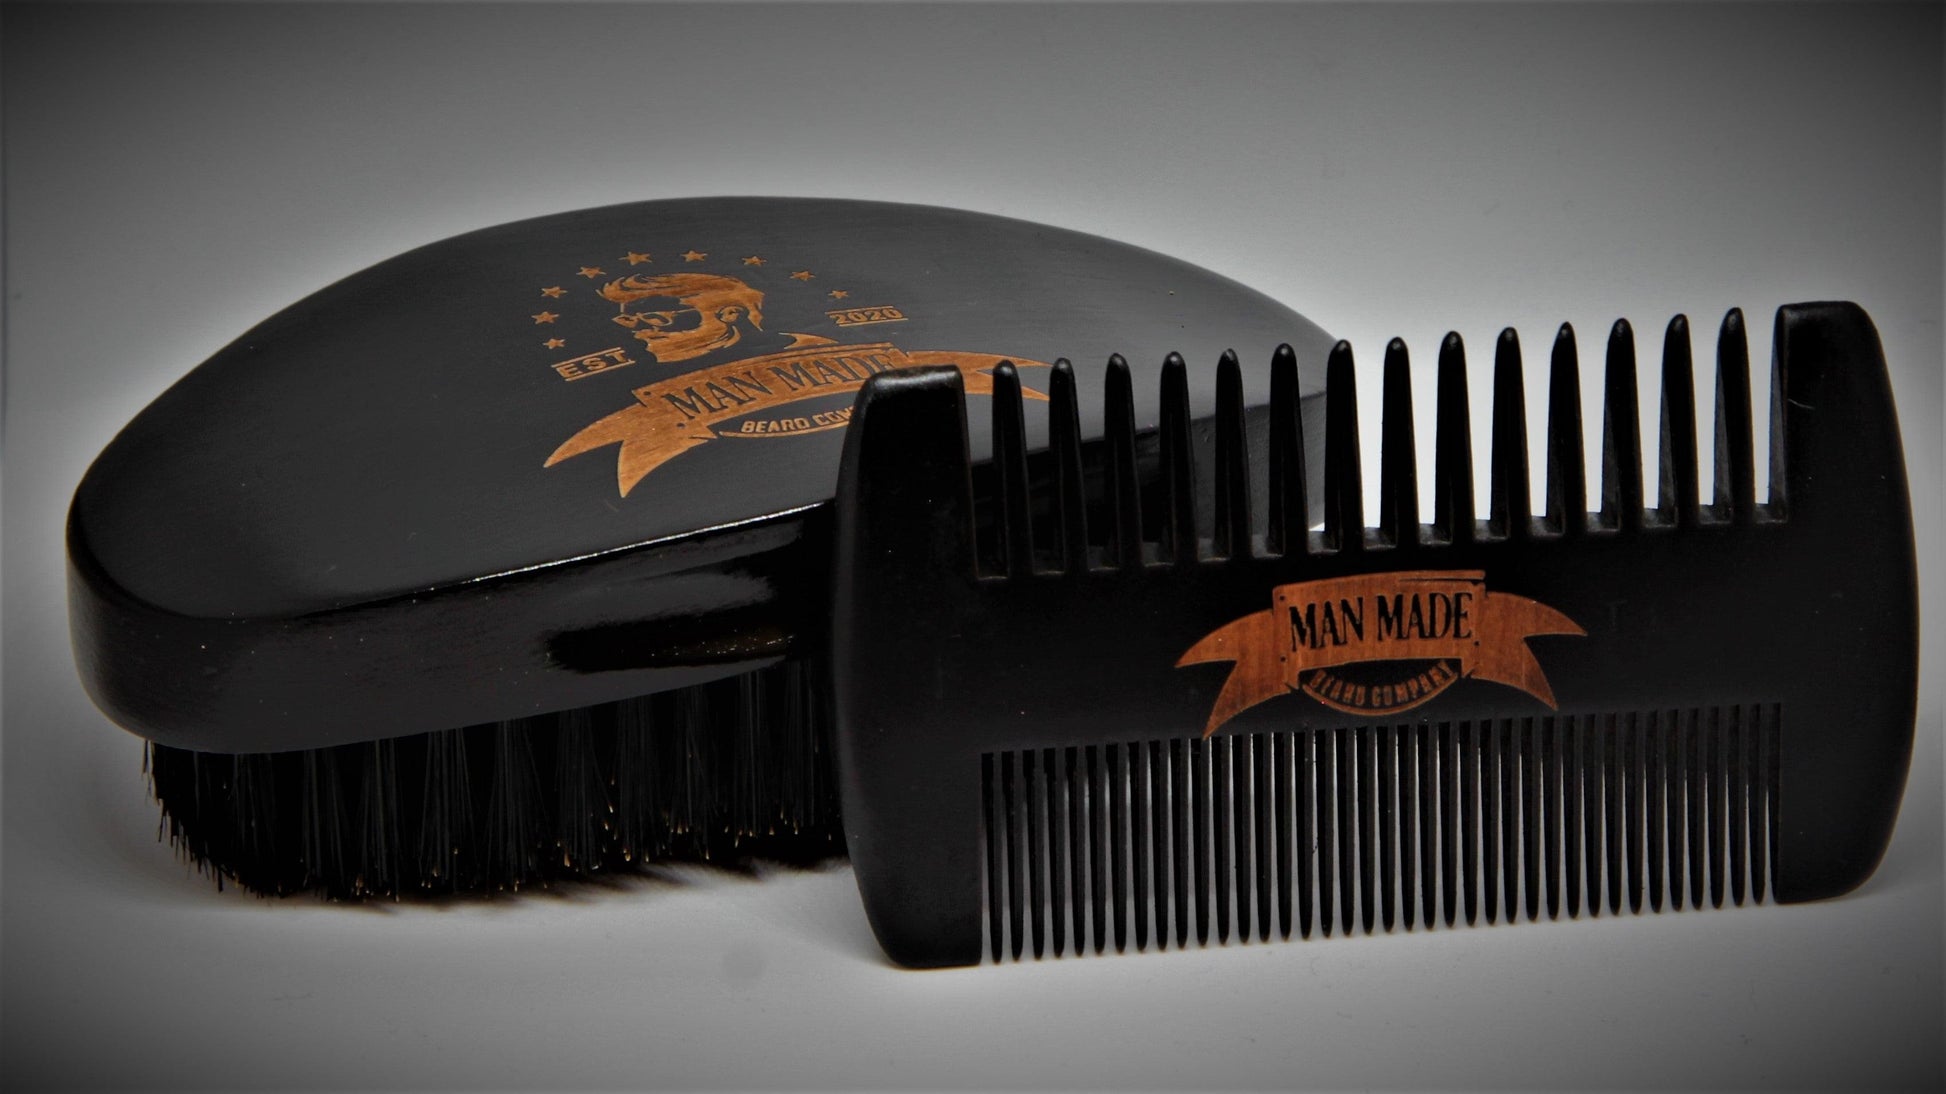 Beard Comb Set